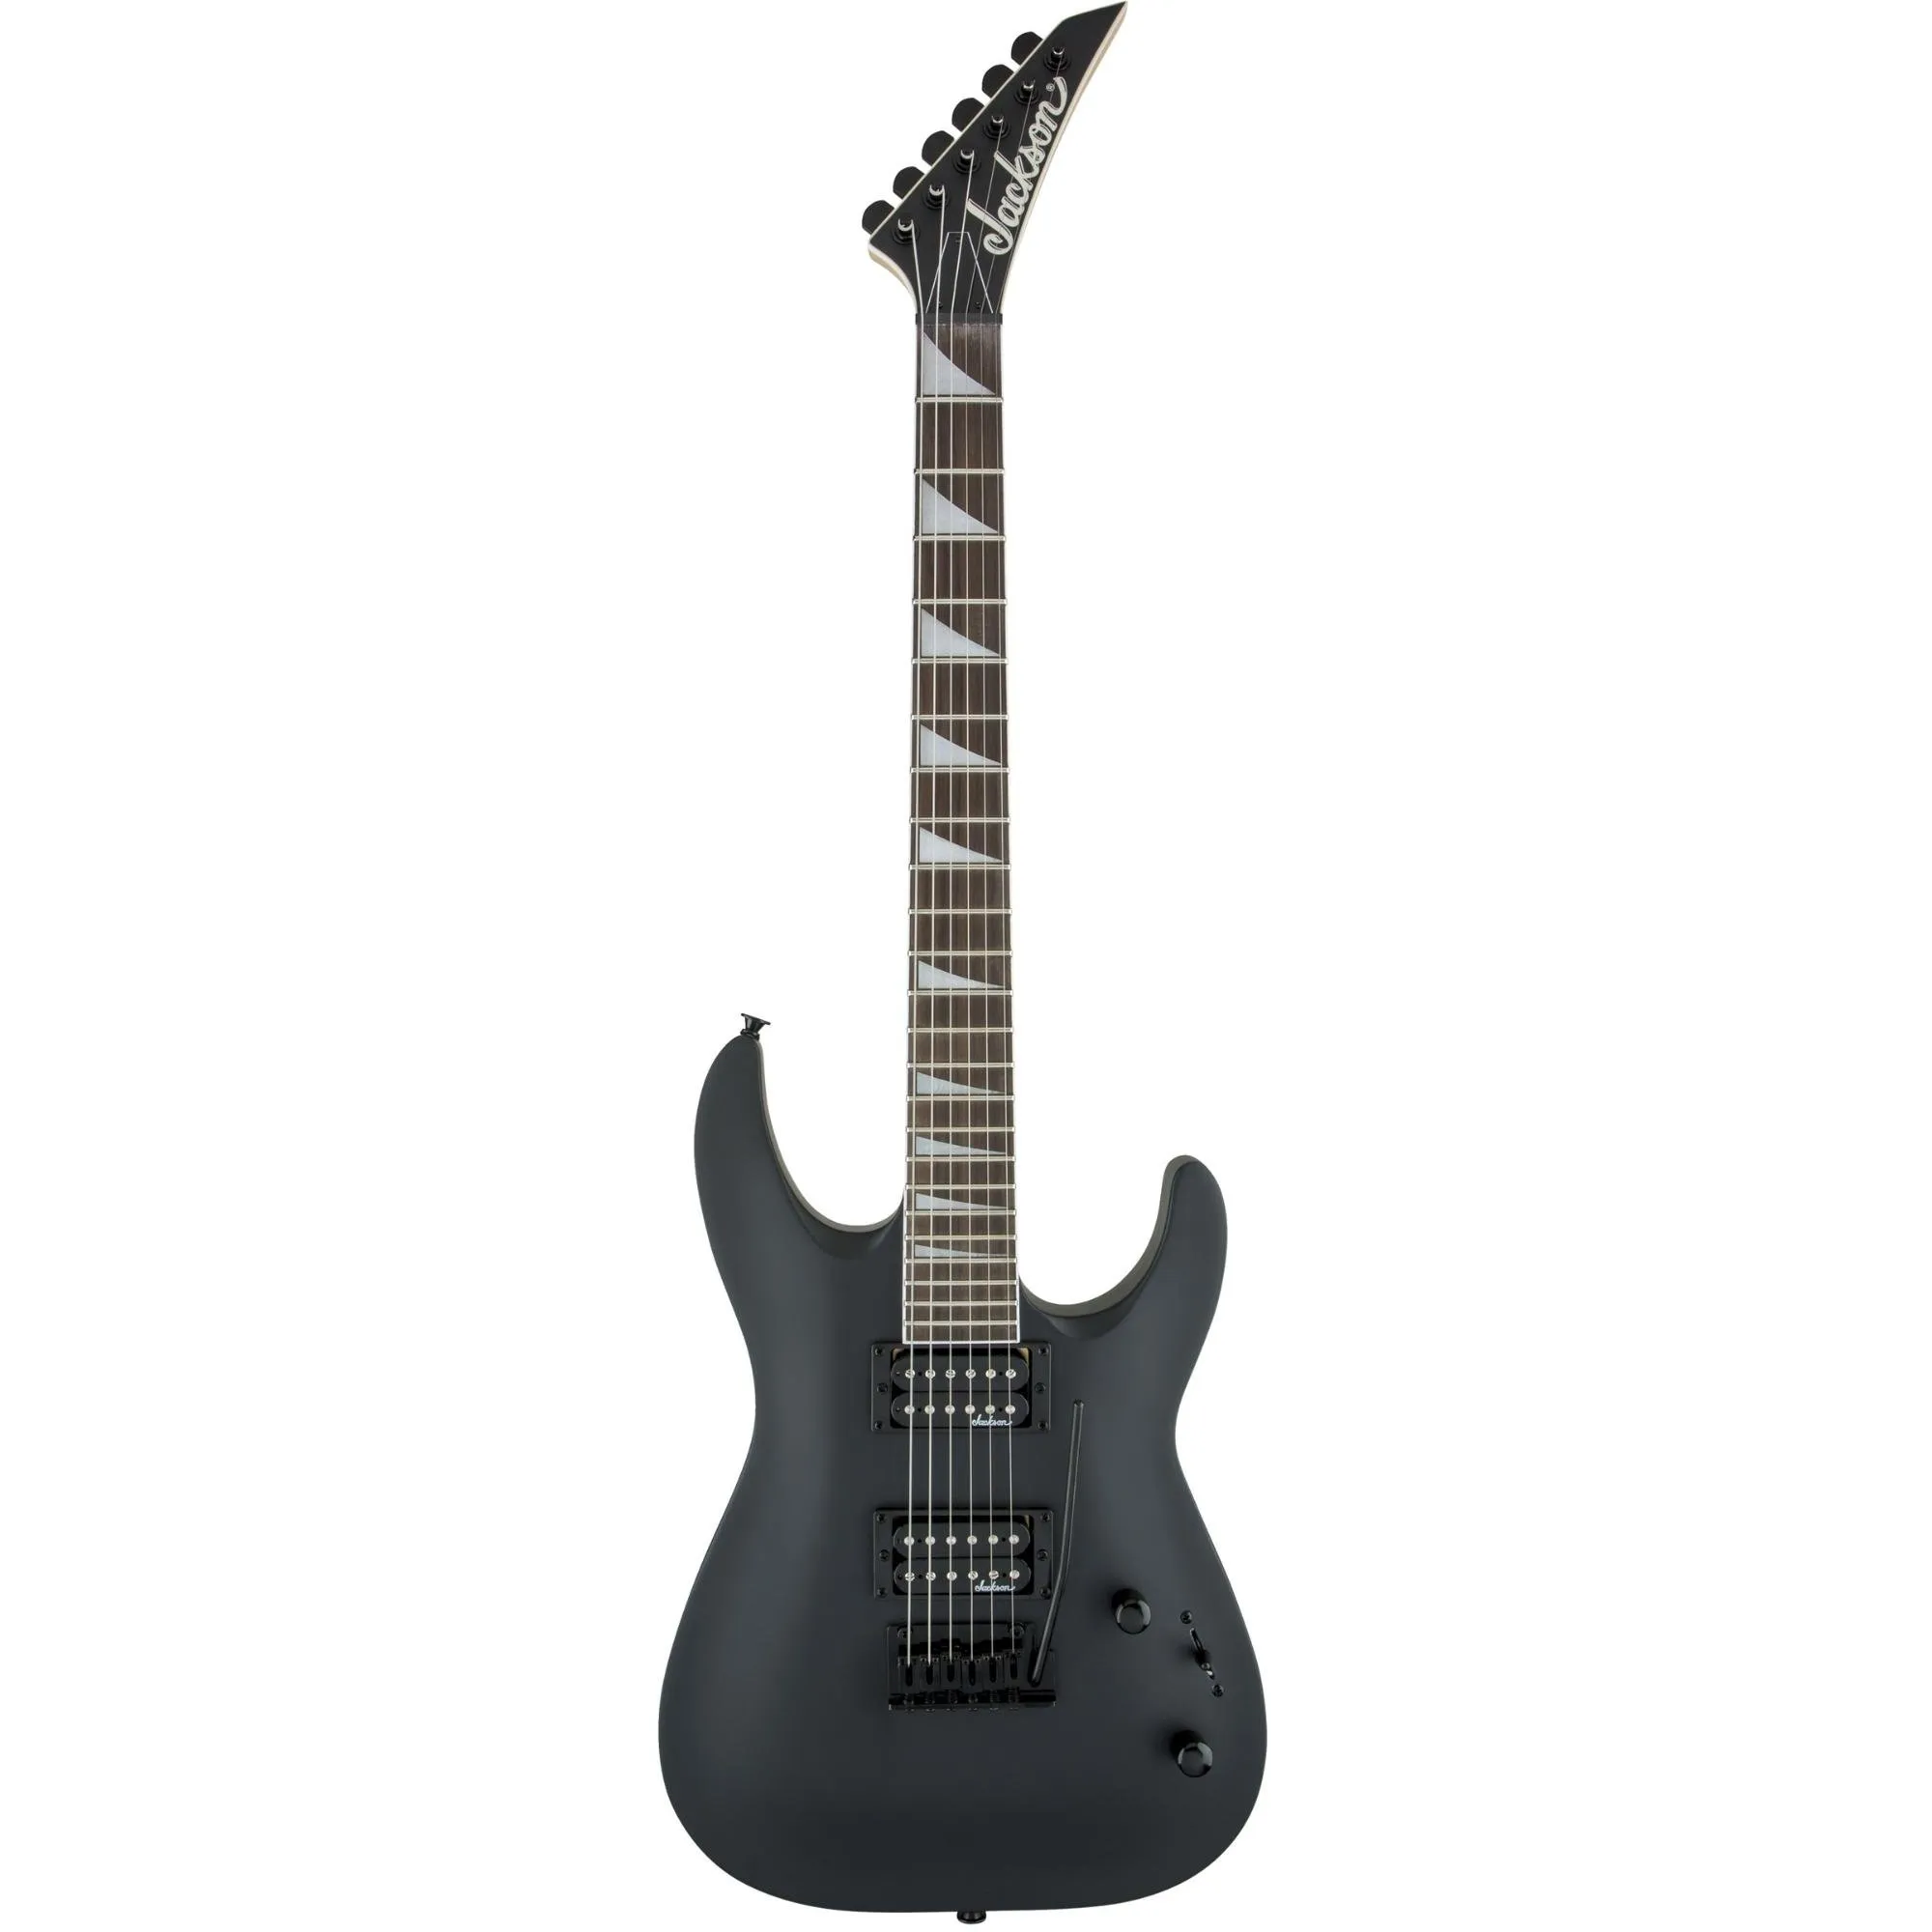 Guitarra Jackson JS Series Dinky Arch Top JS22 Satin Black por 2.215,99 à vista no boleto/pix ou parcele em até 12x sem juros. Compre na loja Mundomax!